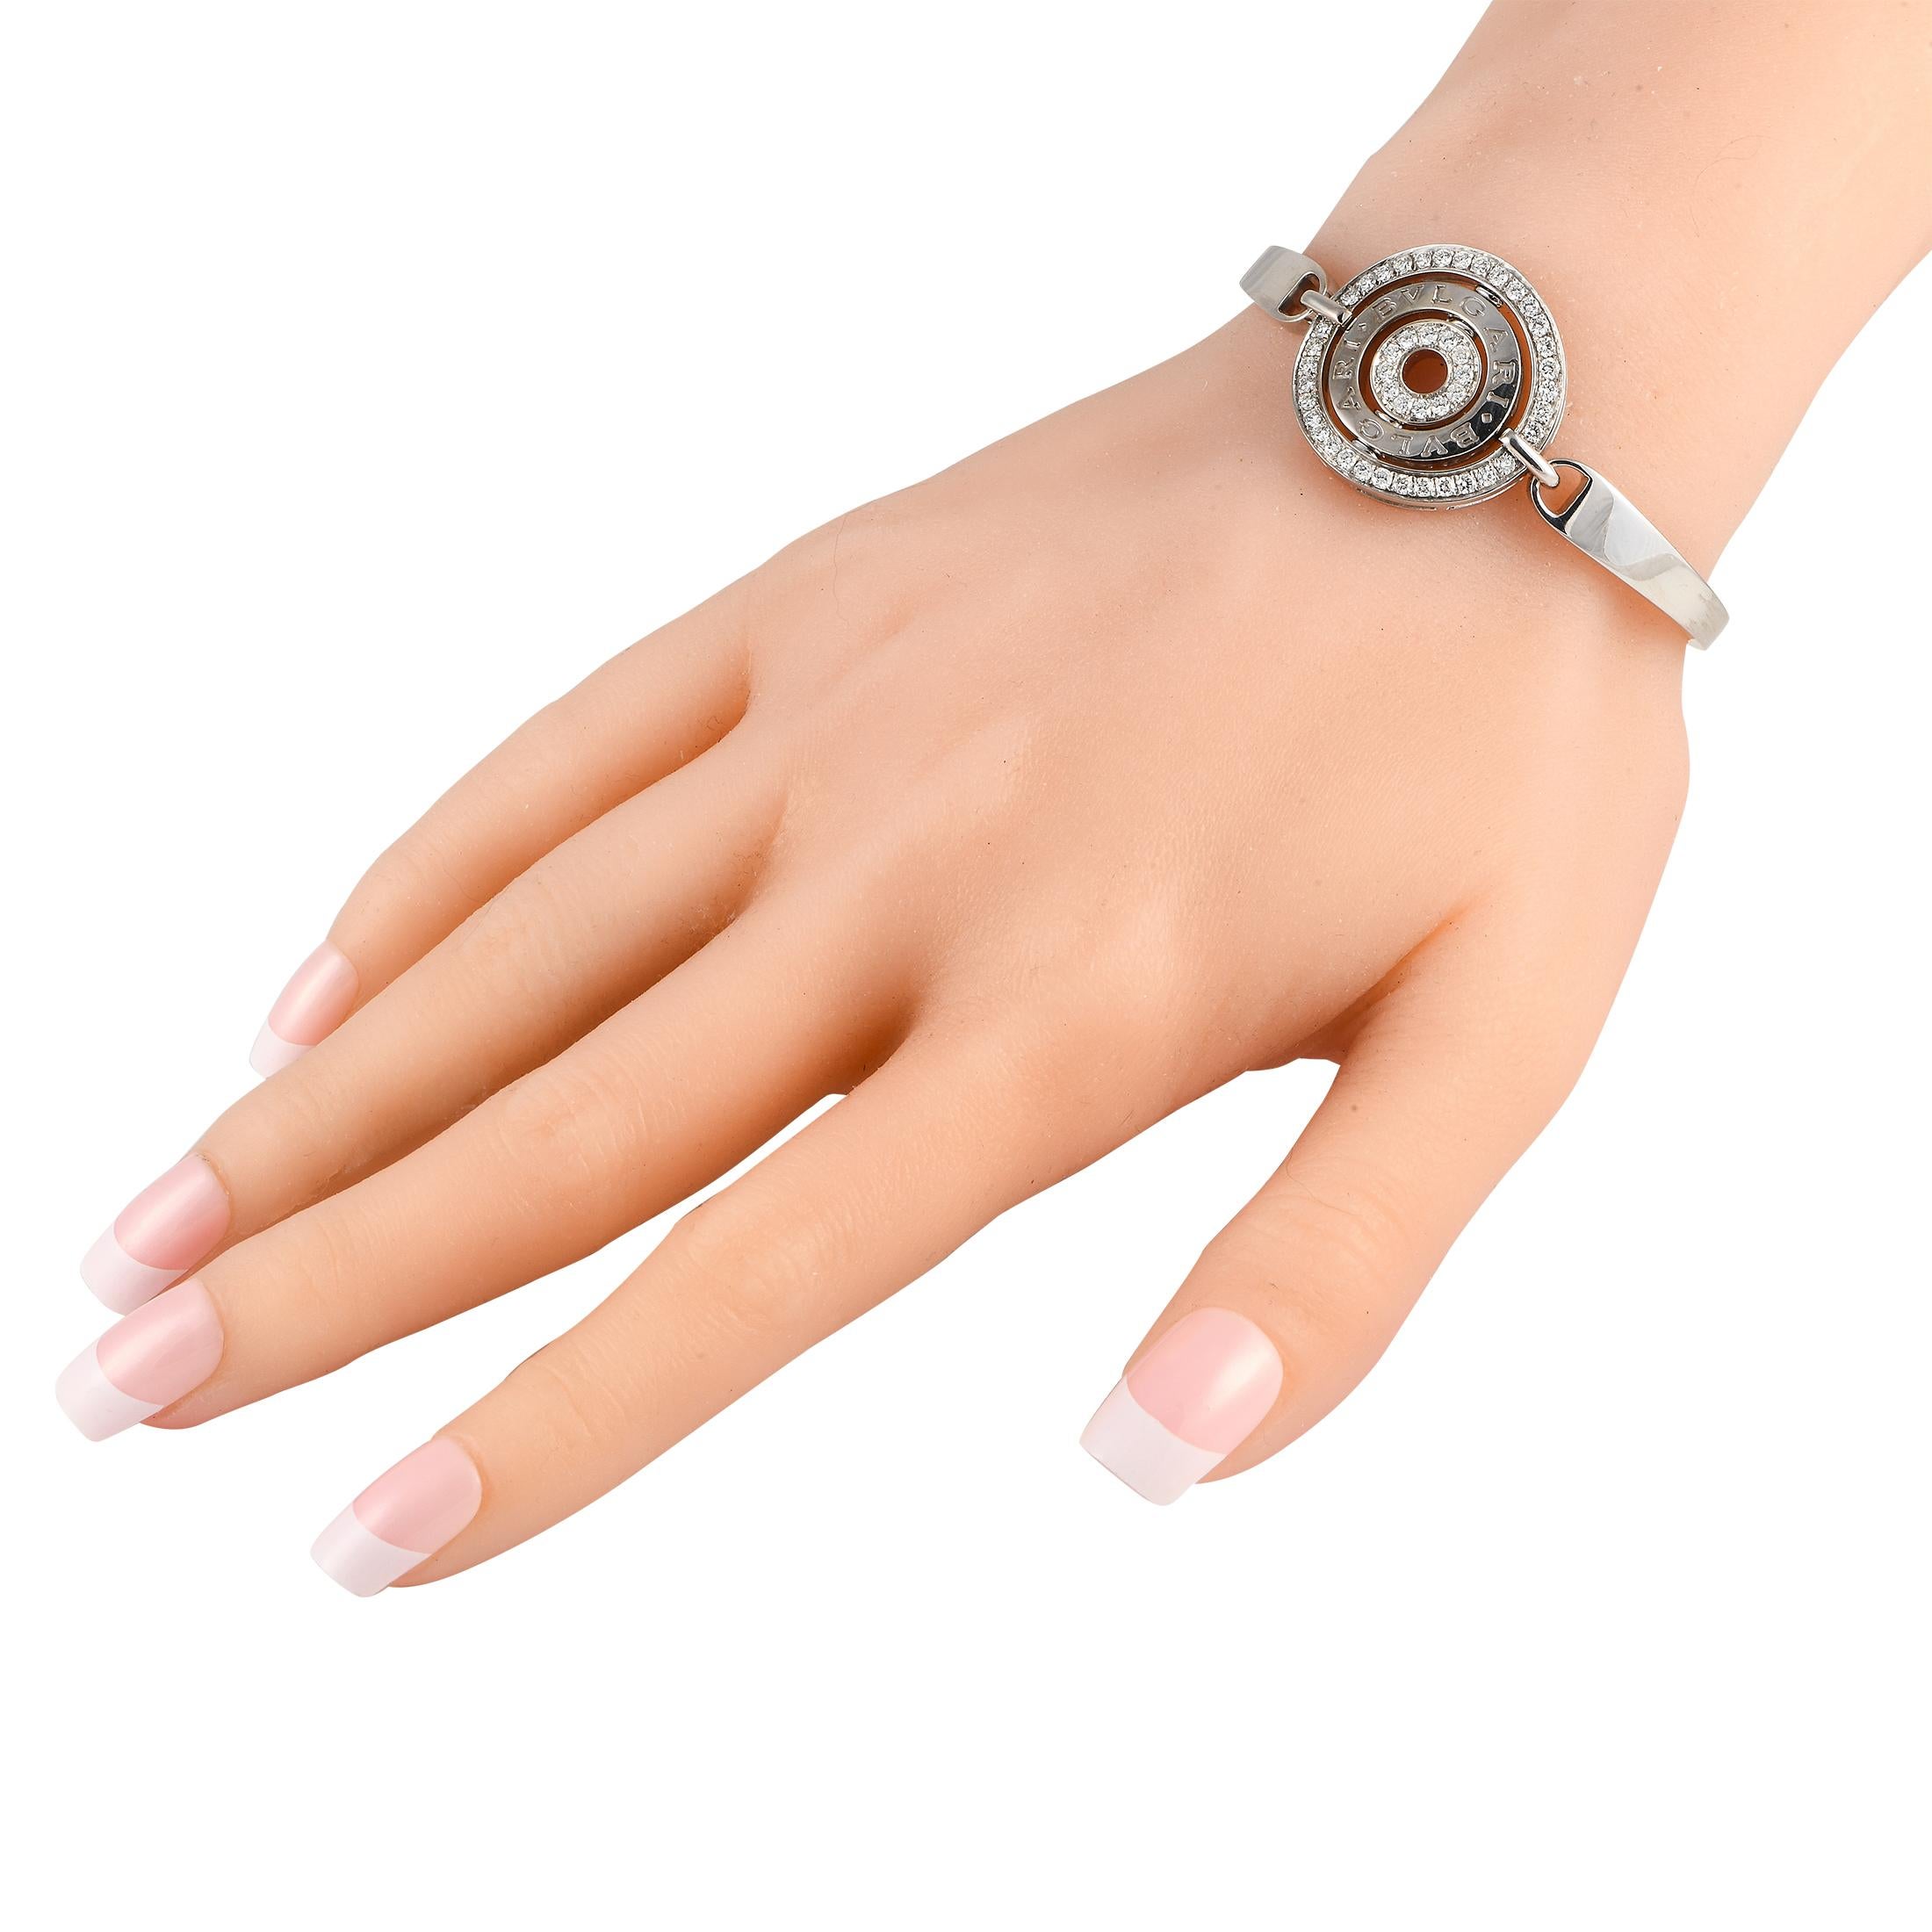 Das Armband Astrale Cerchi von Bvlgari ist ein luxuriöses Stück mit einem ikonischen Sinn für Stil. In der Mitte dieser Stücke schlanke 18K Weißgold Einstellung, finden Sie eine kreisförmige Herzstück mit der Marken-Signatur und funkelnden Diamanten